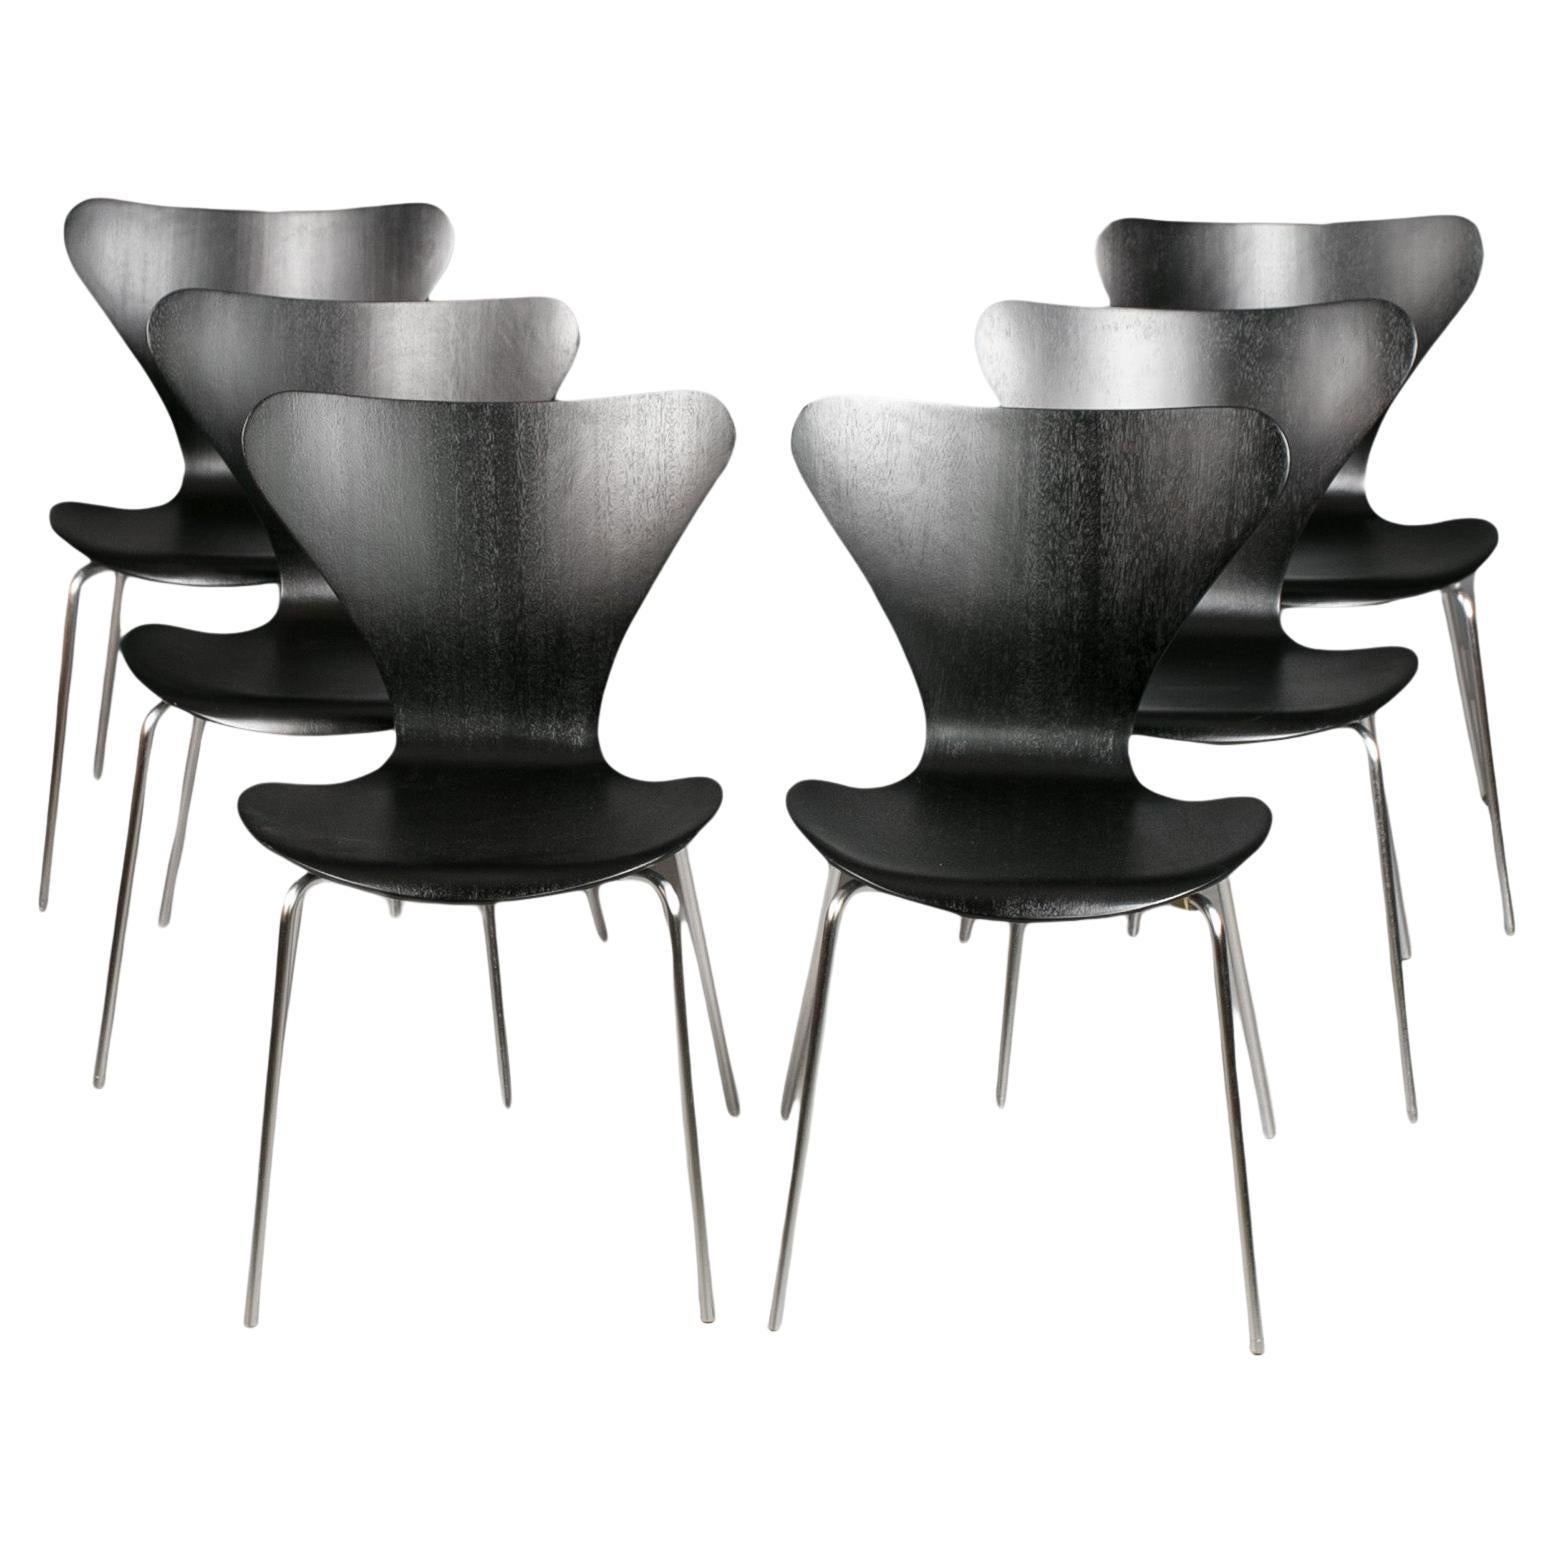 Satz von 6 Esszimmerstühlen in Schwarz, Serie7 von Arne Jacobsen, Fritz Hansen, 1950er Jahre